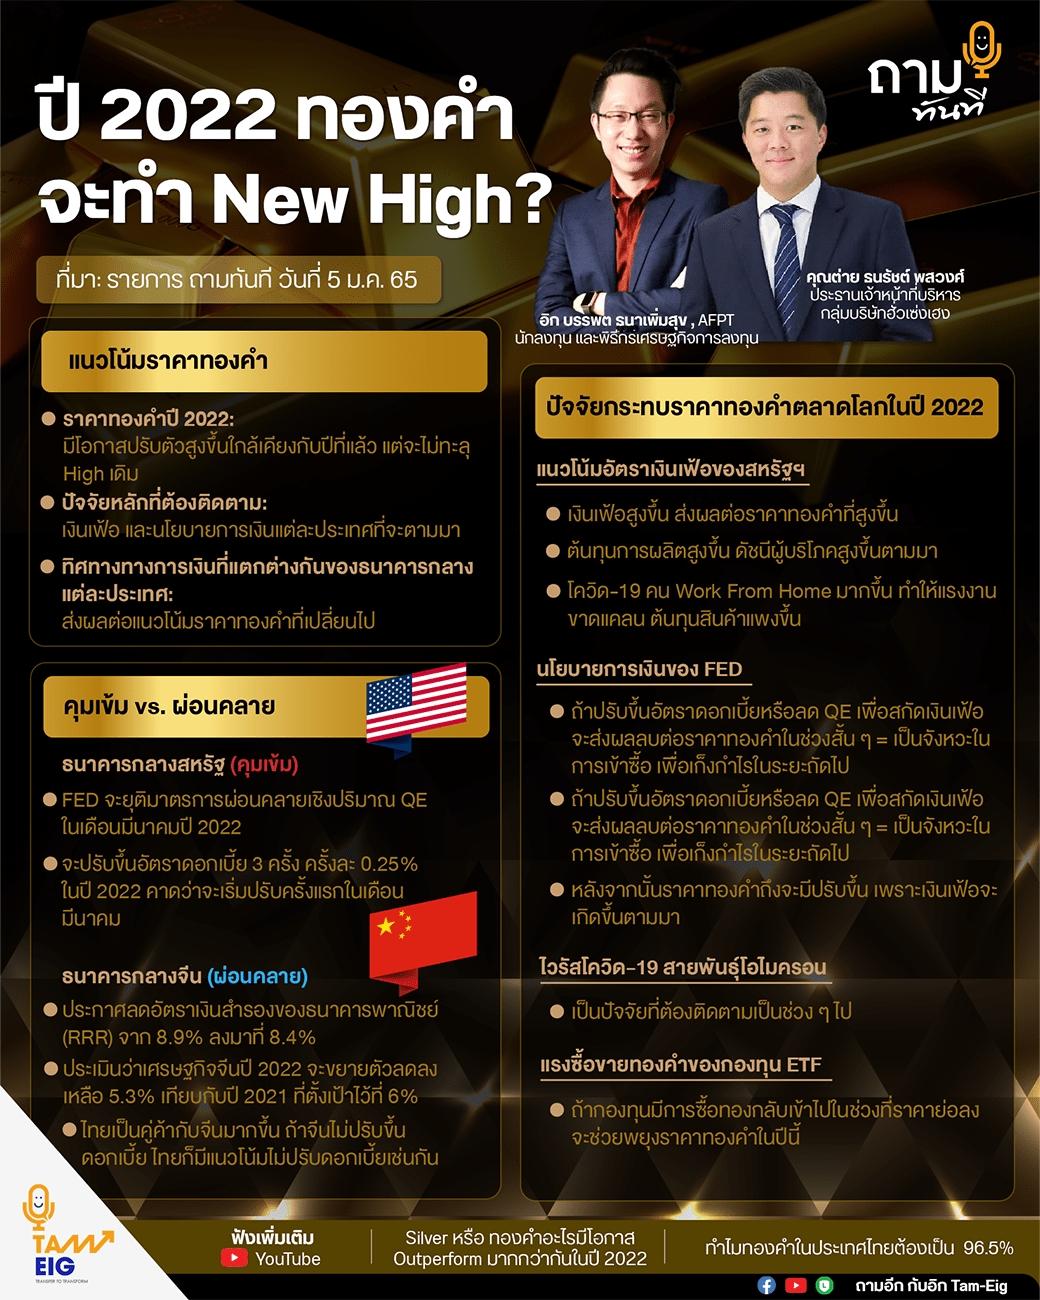 ปี 2022 ทองคำจะทำ New High? ถามอีก กับคุณต่าย ธนรัชต์ พสวงศ์ ประธานเจ้าหน้าที่บริหารกลุ่มบริษัทฮั่วเซ่งเฮง